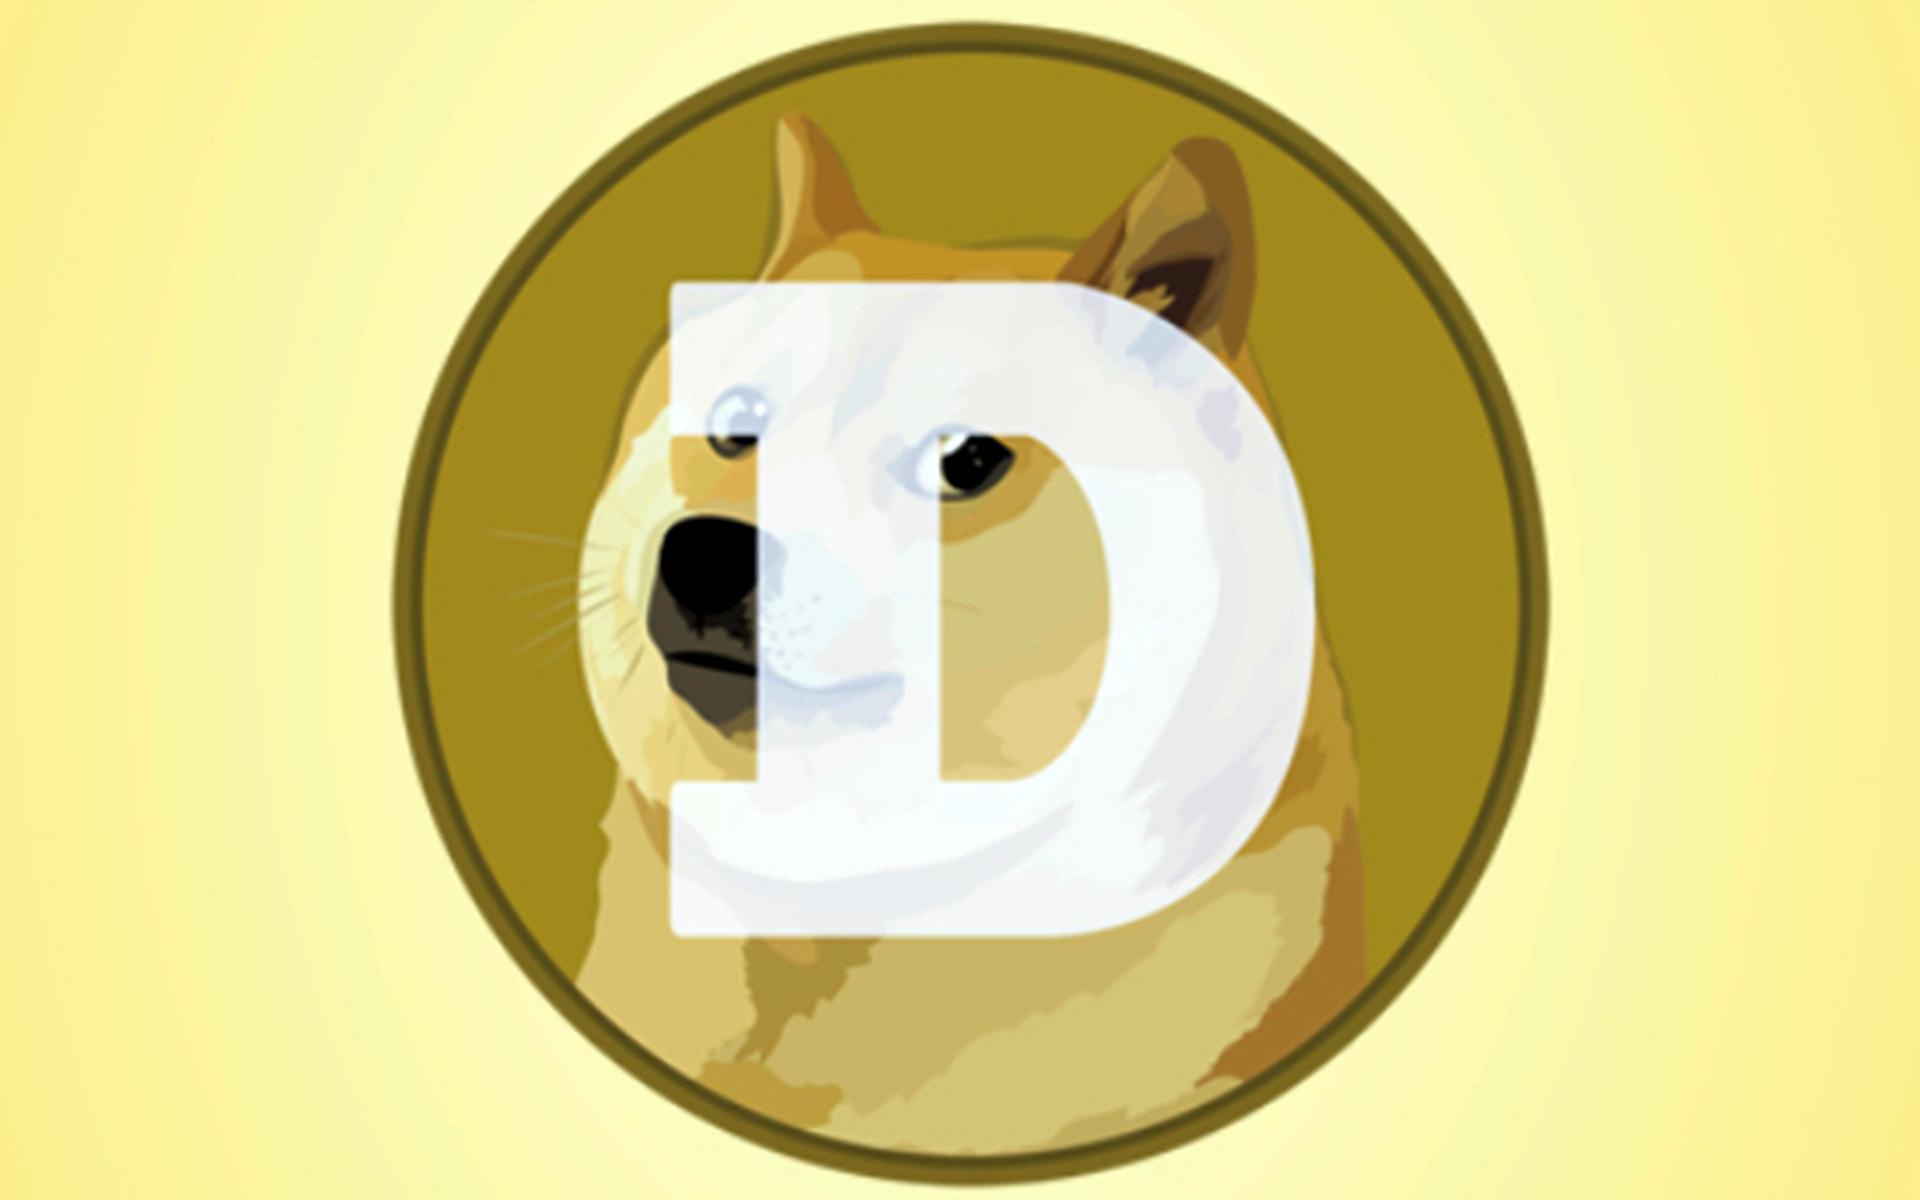 En logga för kryptovalutan Dogecoin, som från början skapades som ett skämt baserat på ett populärt meme.